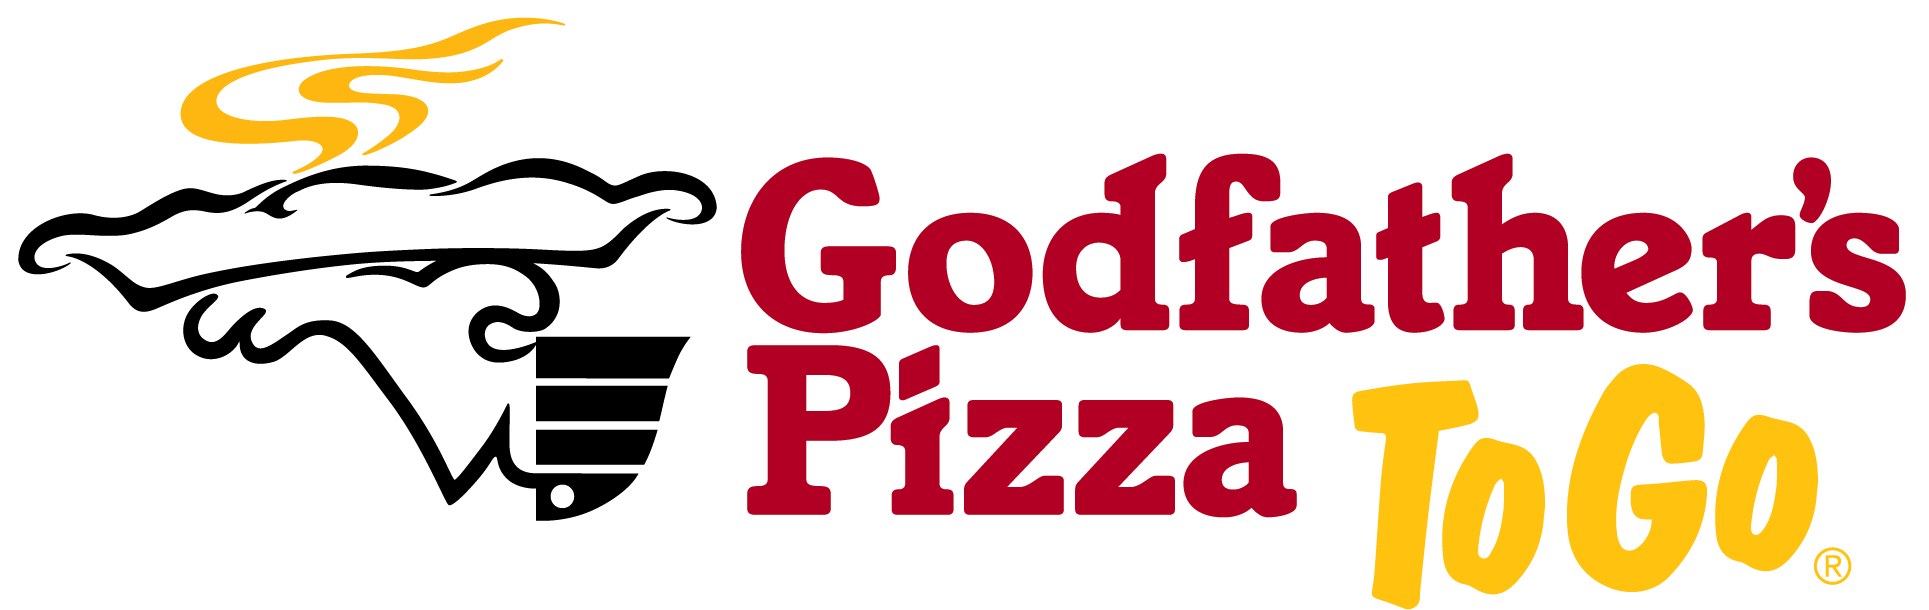 Godfather's Pizza TO GO